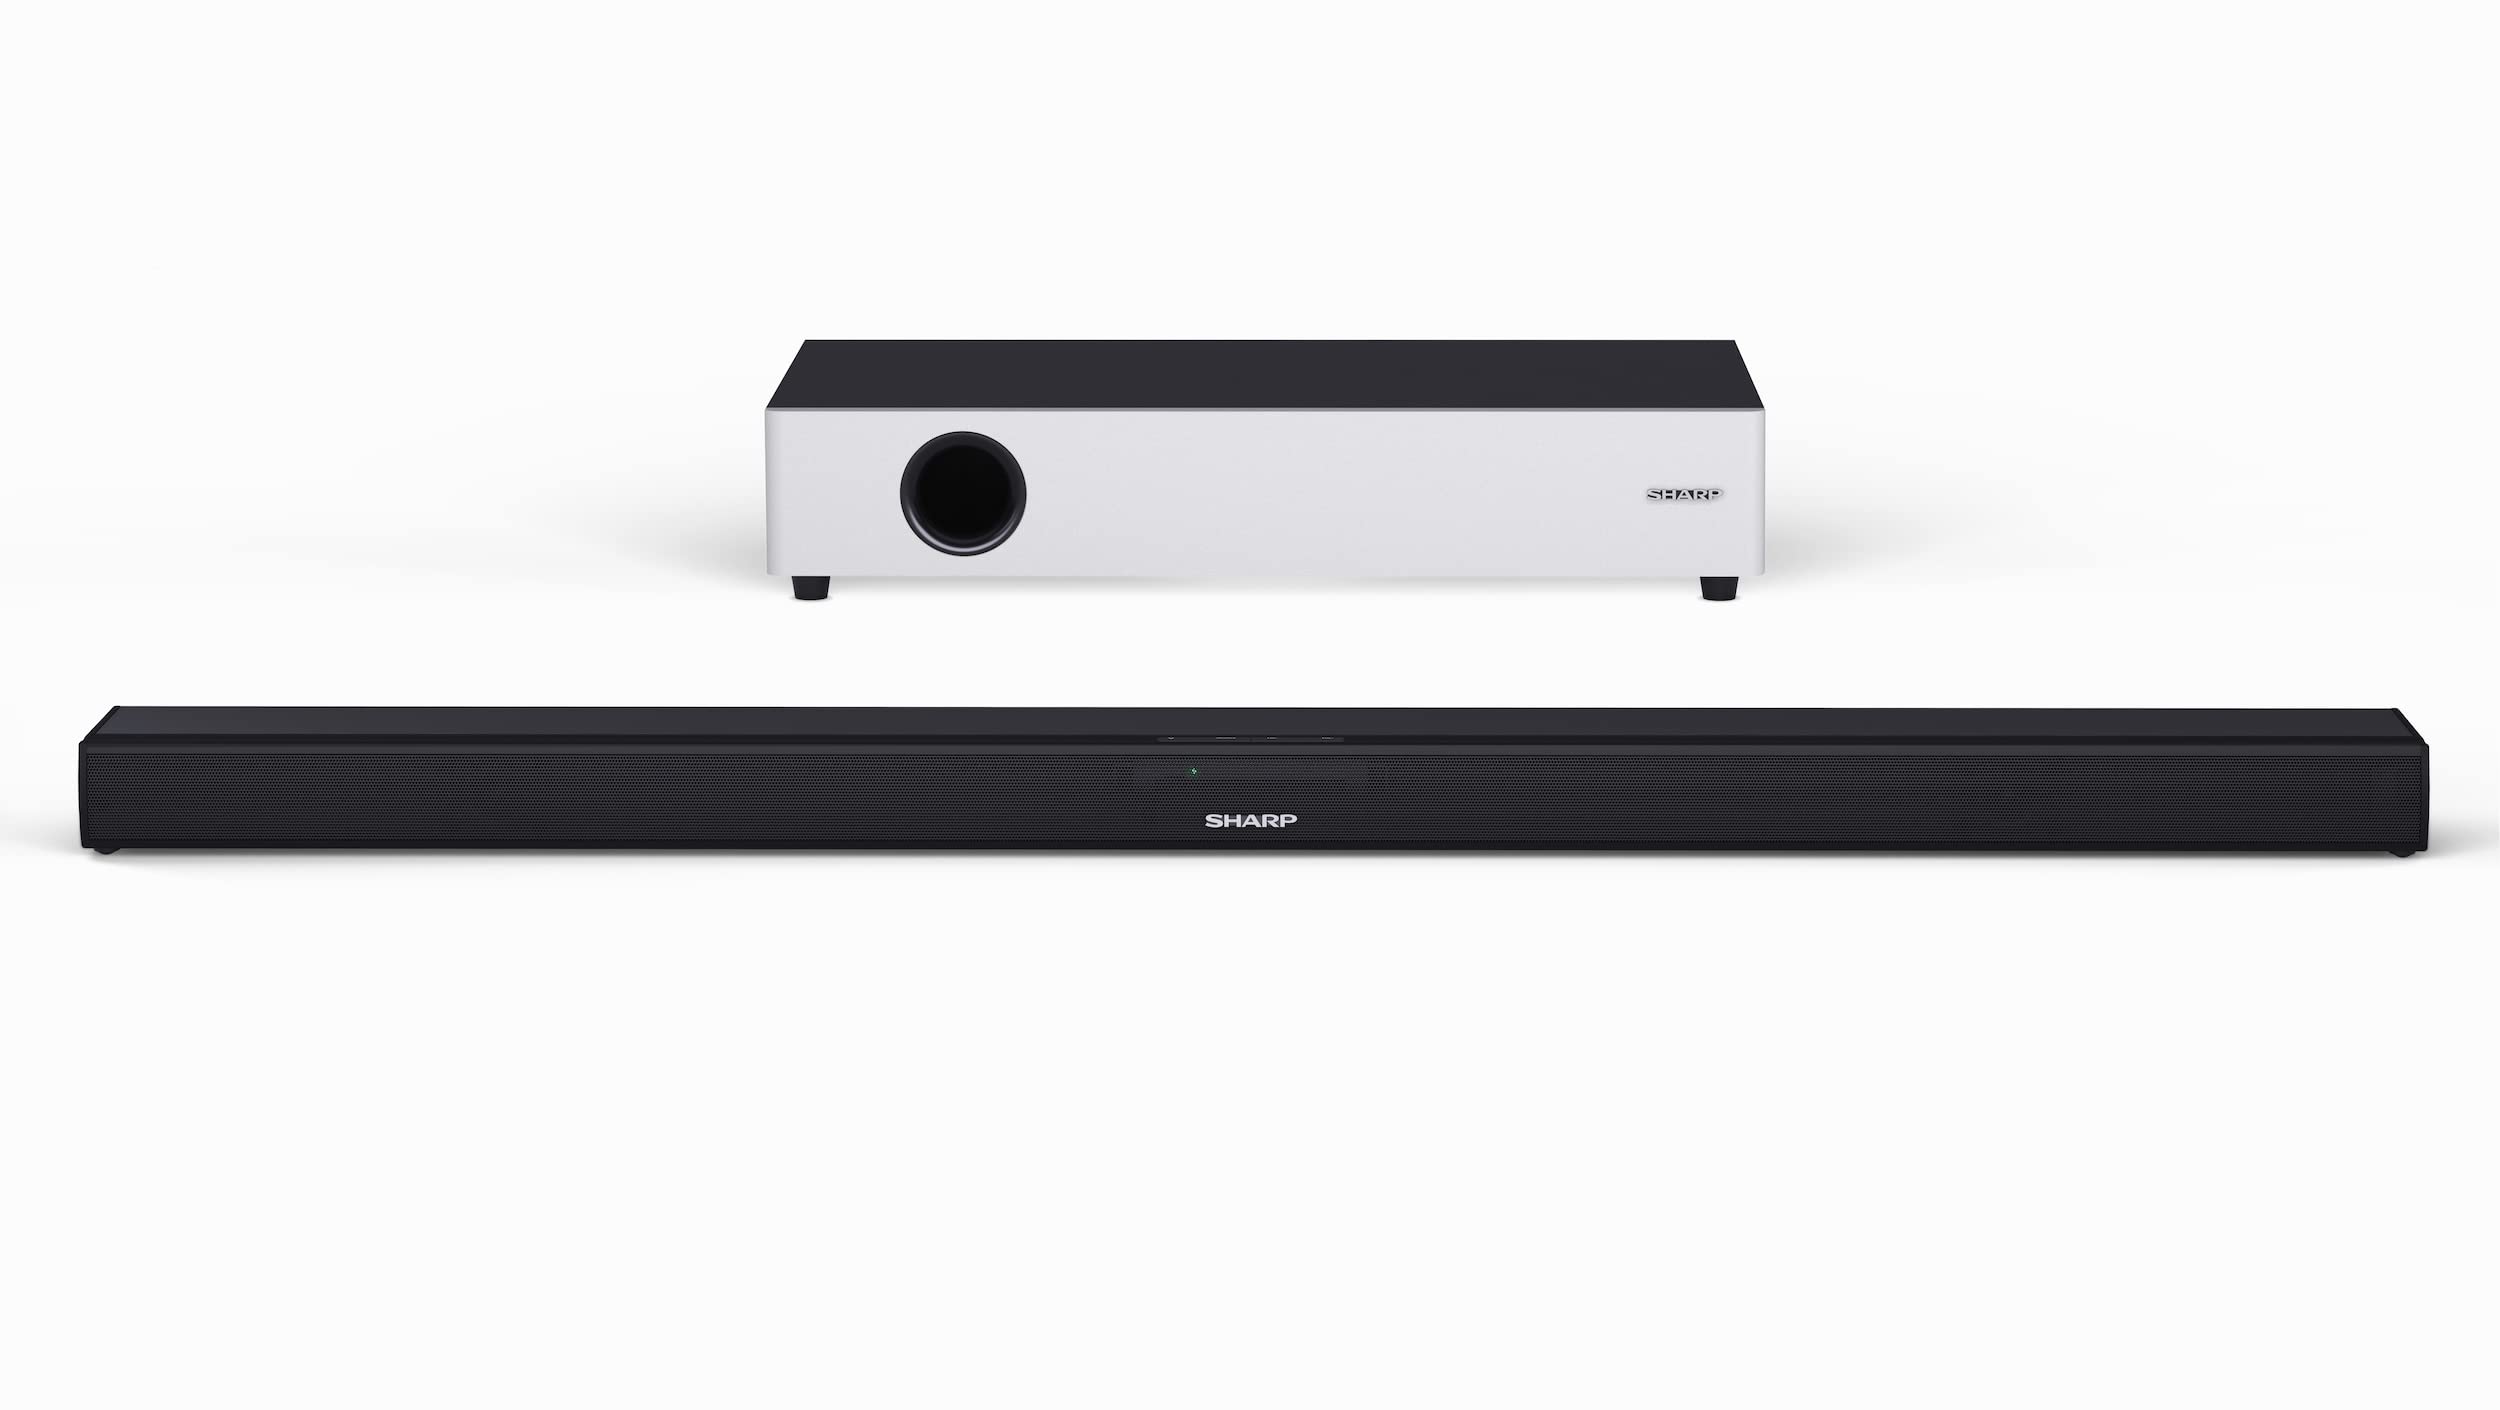 SHARP HTSBW160 2.1 Soundbar 360W (USB, Bluetooh, HDMI, Optisch, AUX-In (3,5mm), Breite: 90cm), Ultra-Slim Design, drahtloser Subwoofer, schwarz